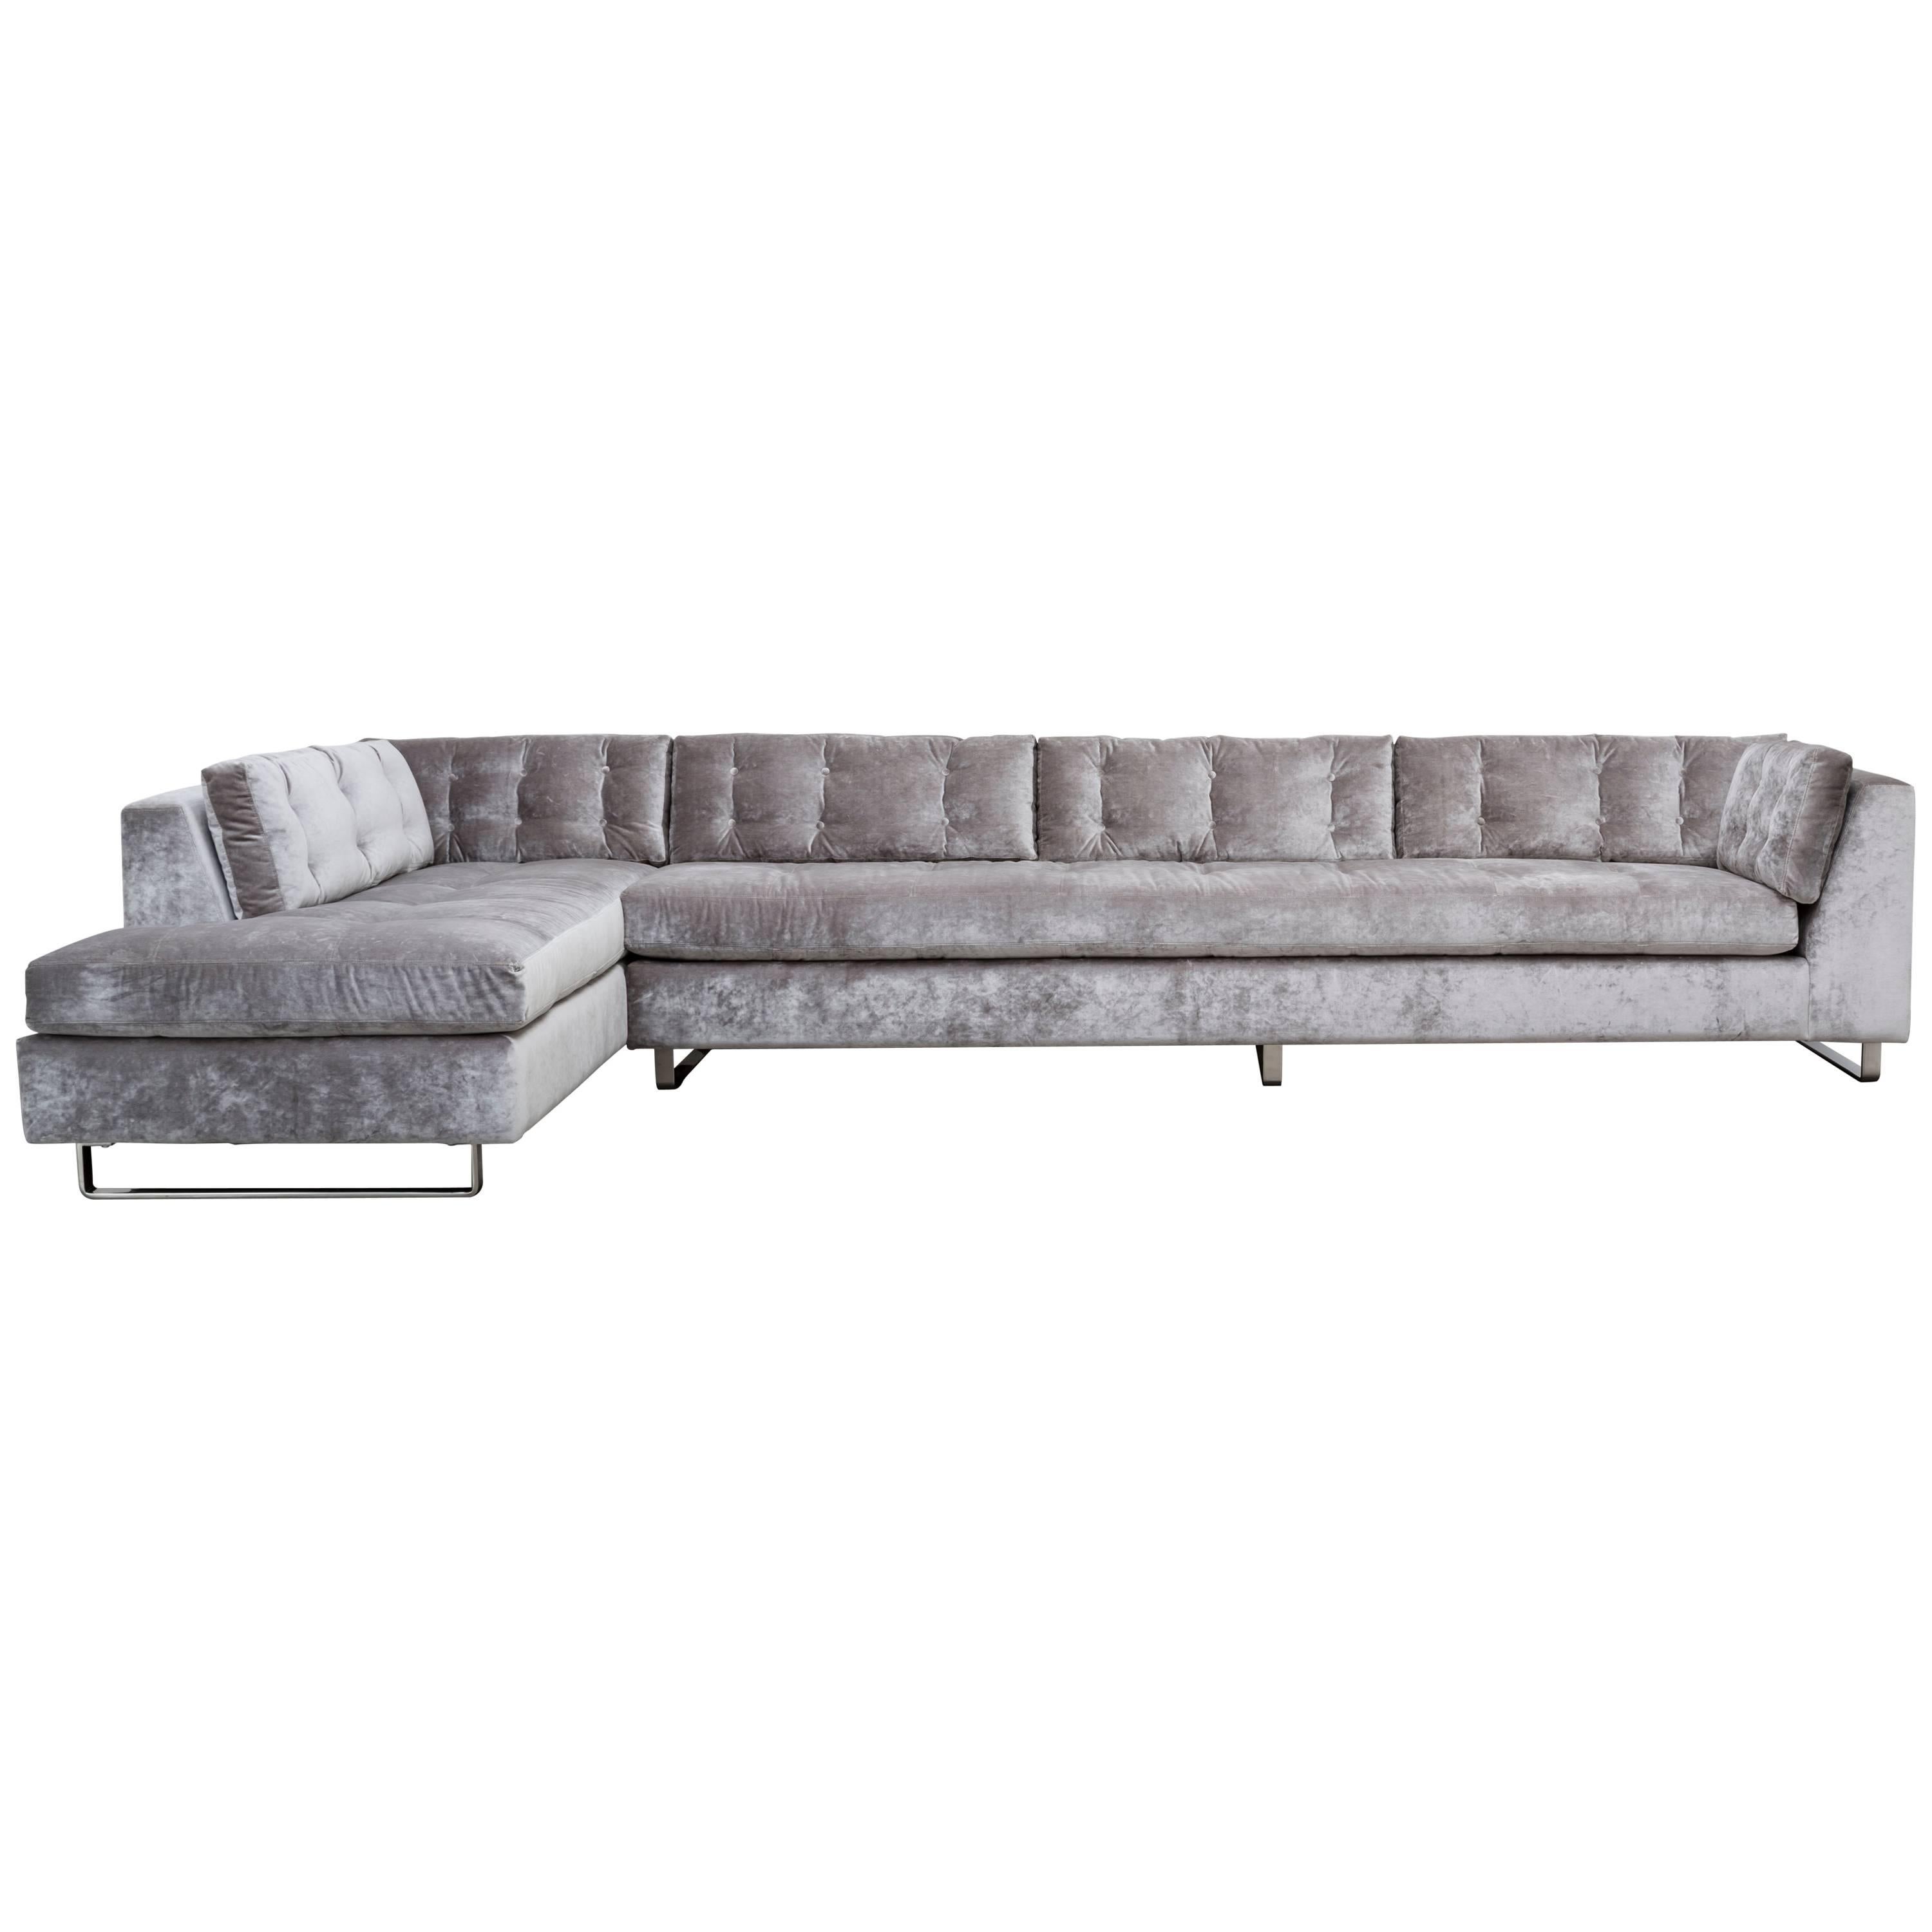 SIENNA SECTIONAL - Modern Tufted Sofa in Luxury Velvet over Metal Legs